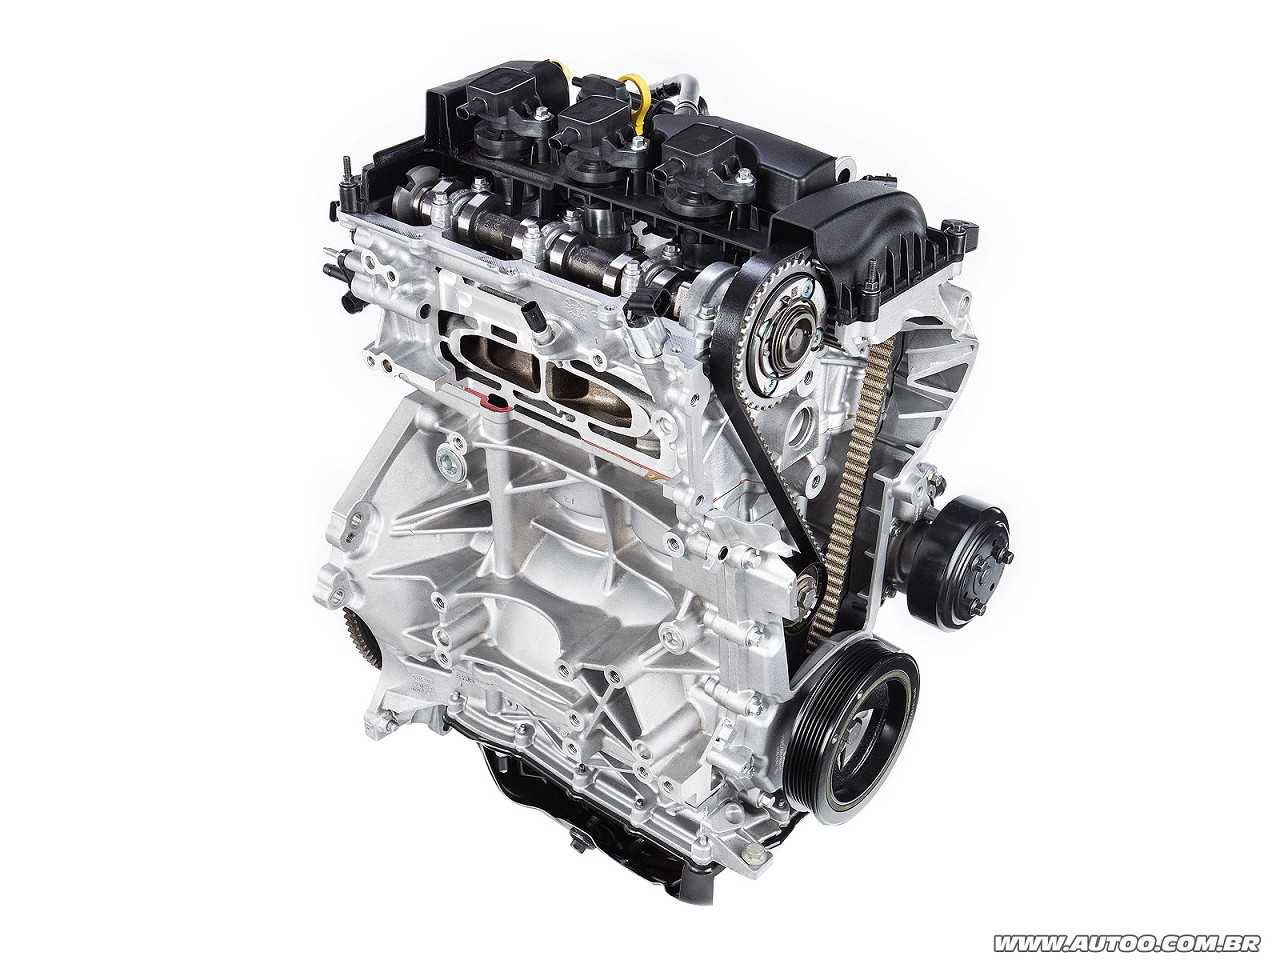 Opinião sobre o novo motor 1.5 tricilíndrico da Ford